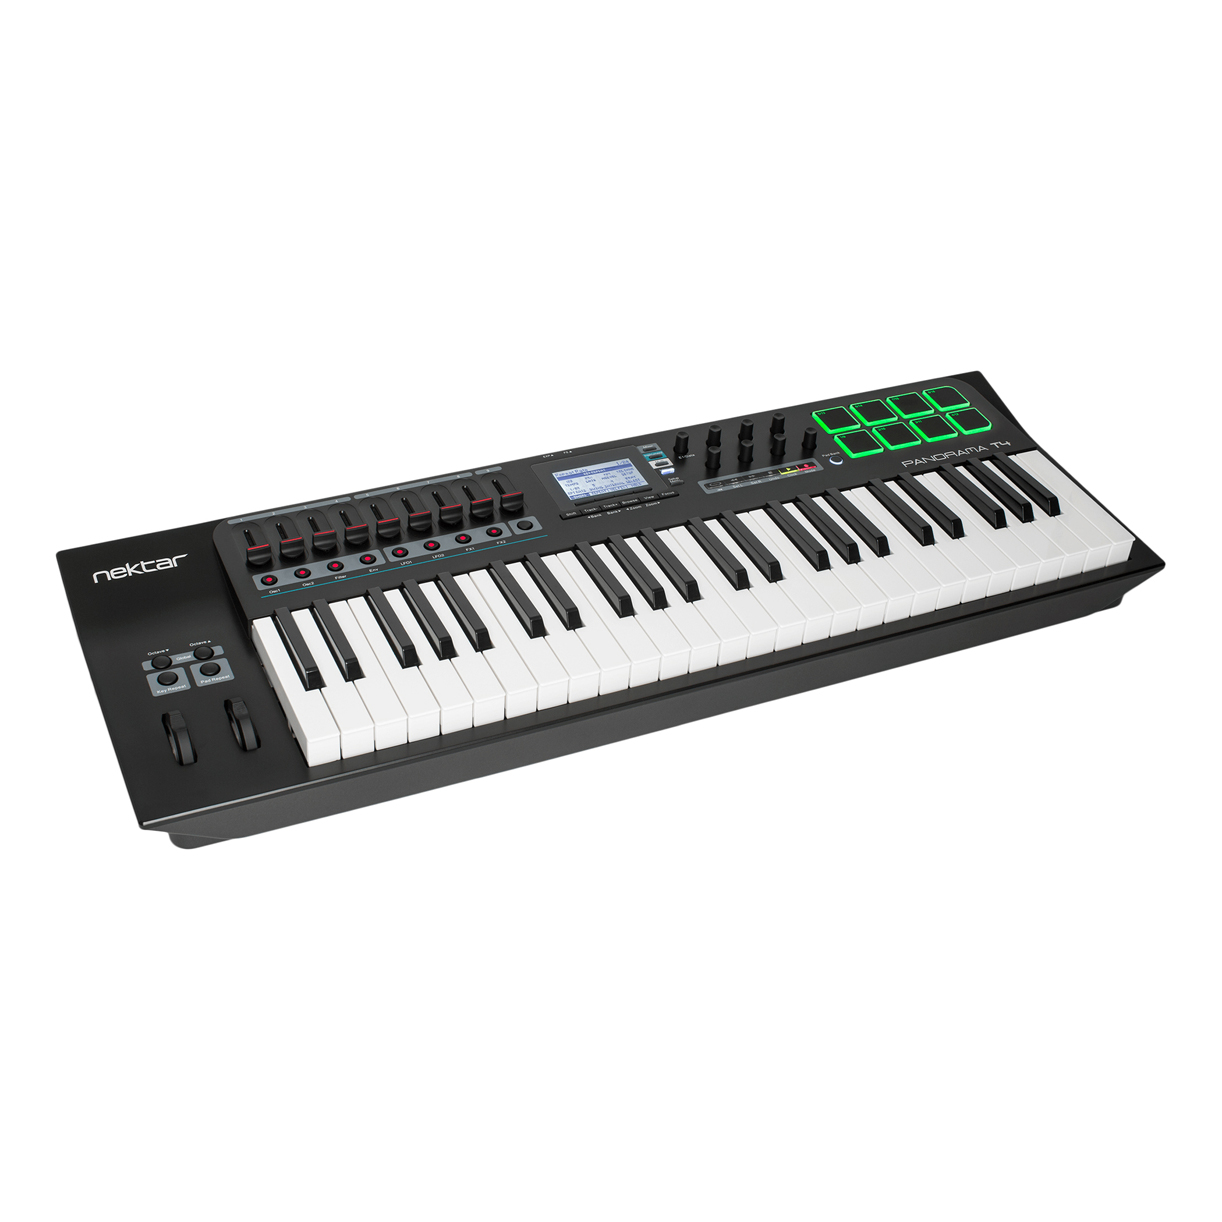 MIDI клавиатуры Nektar Panorama T4 midi клавиатуры midi контроллеры korg microkey2 25